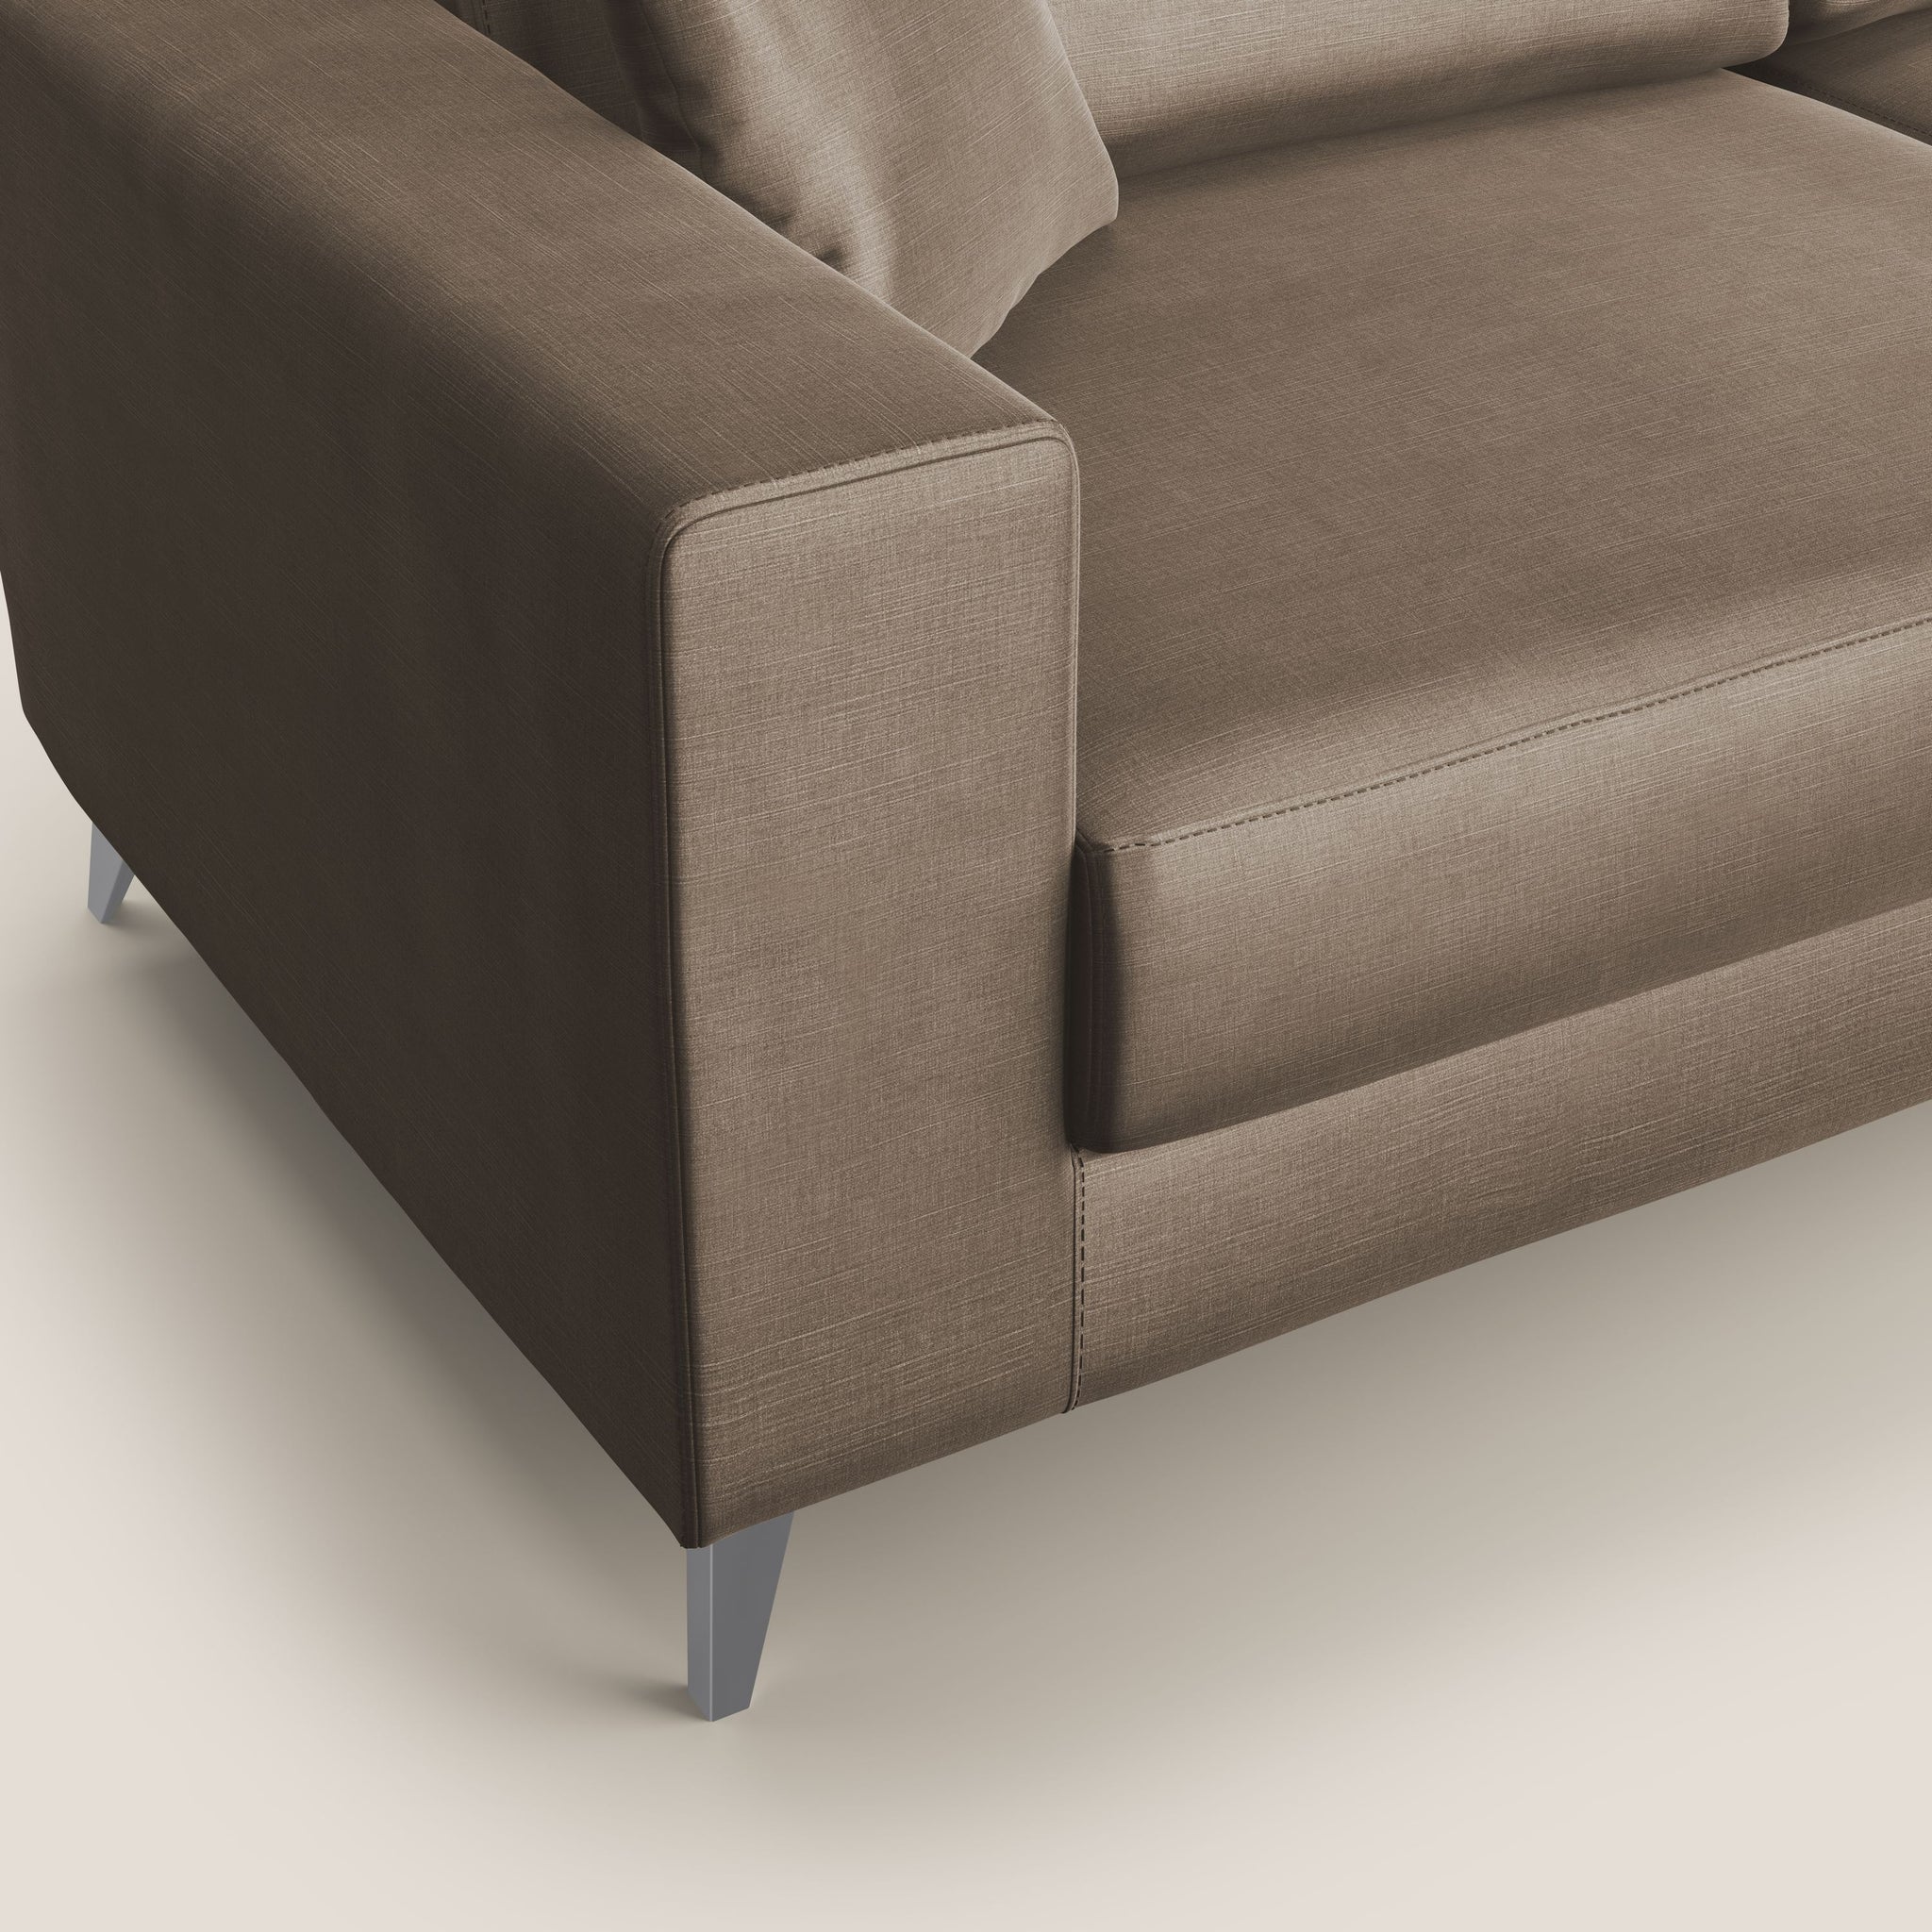 Michael divano moderno angolare con penisola in morbido velluto impermeabile T01